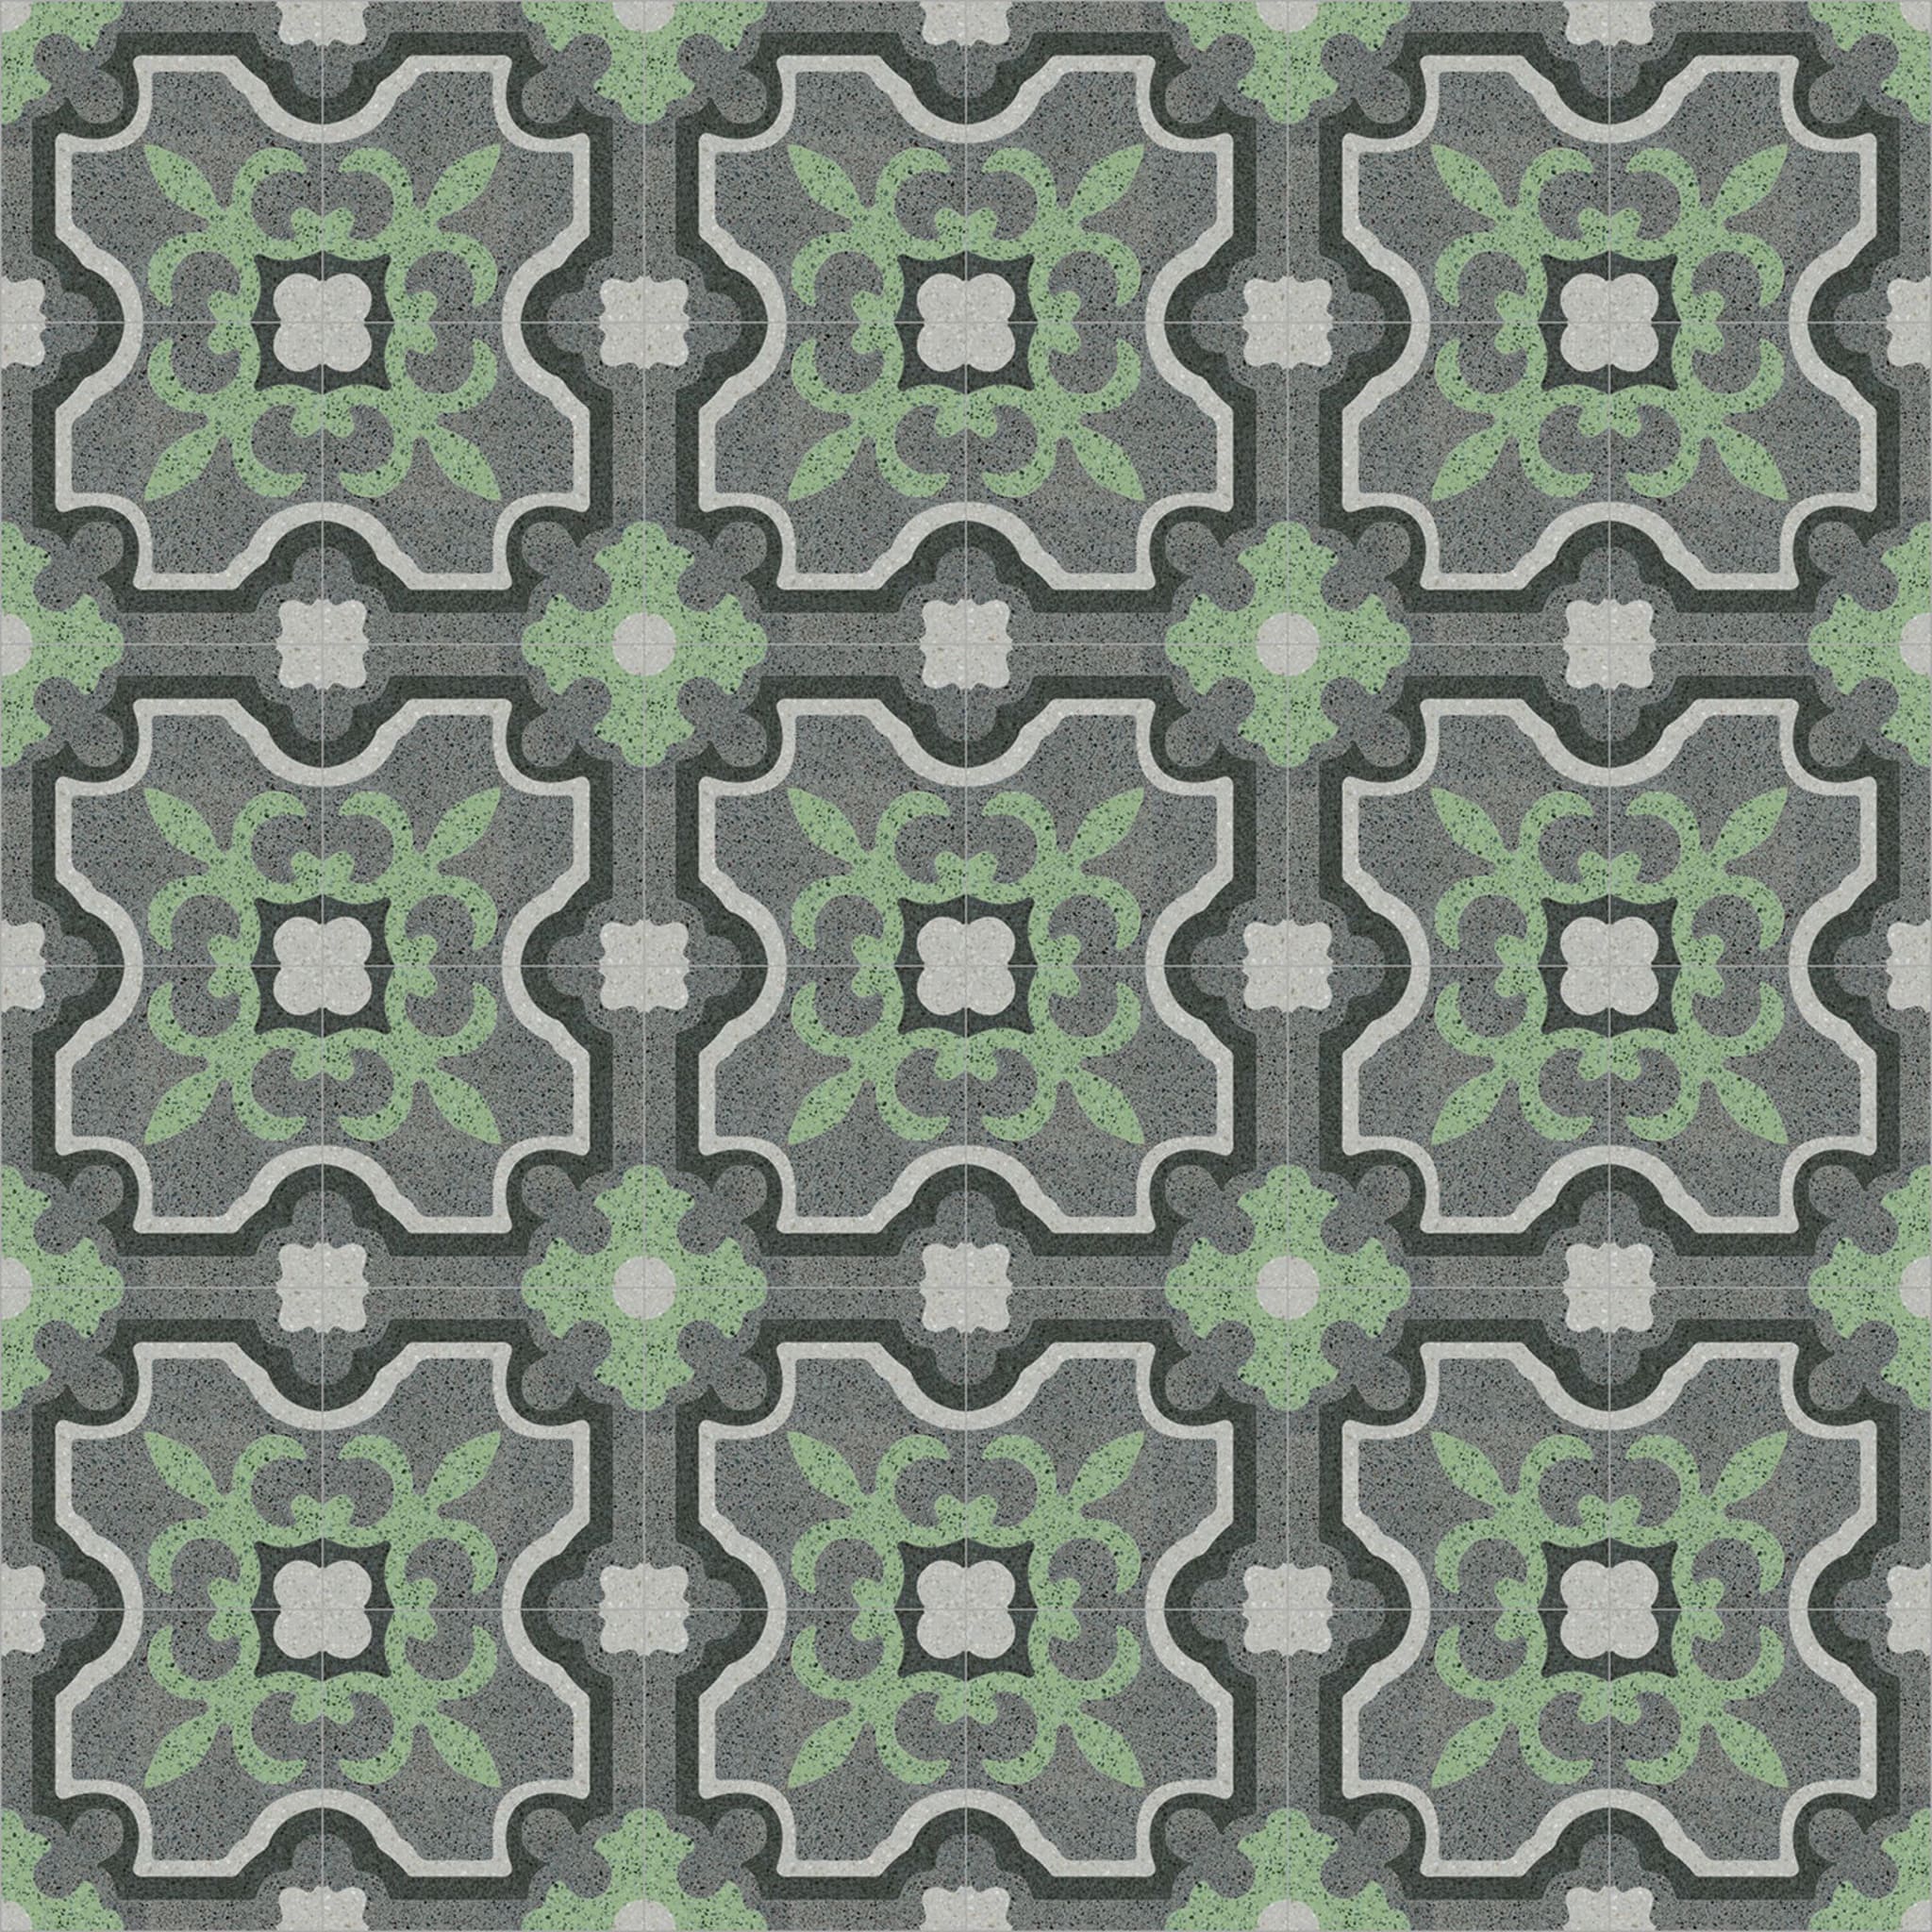 Versus Set of 25 Terrazzo Tiles - Alternative view 1